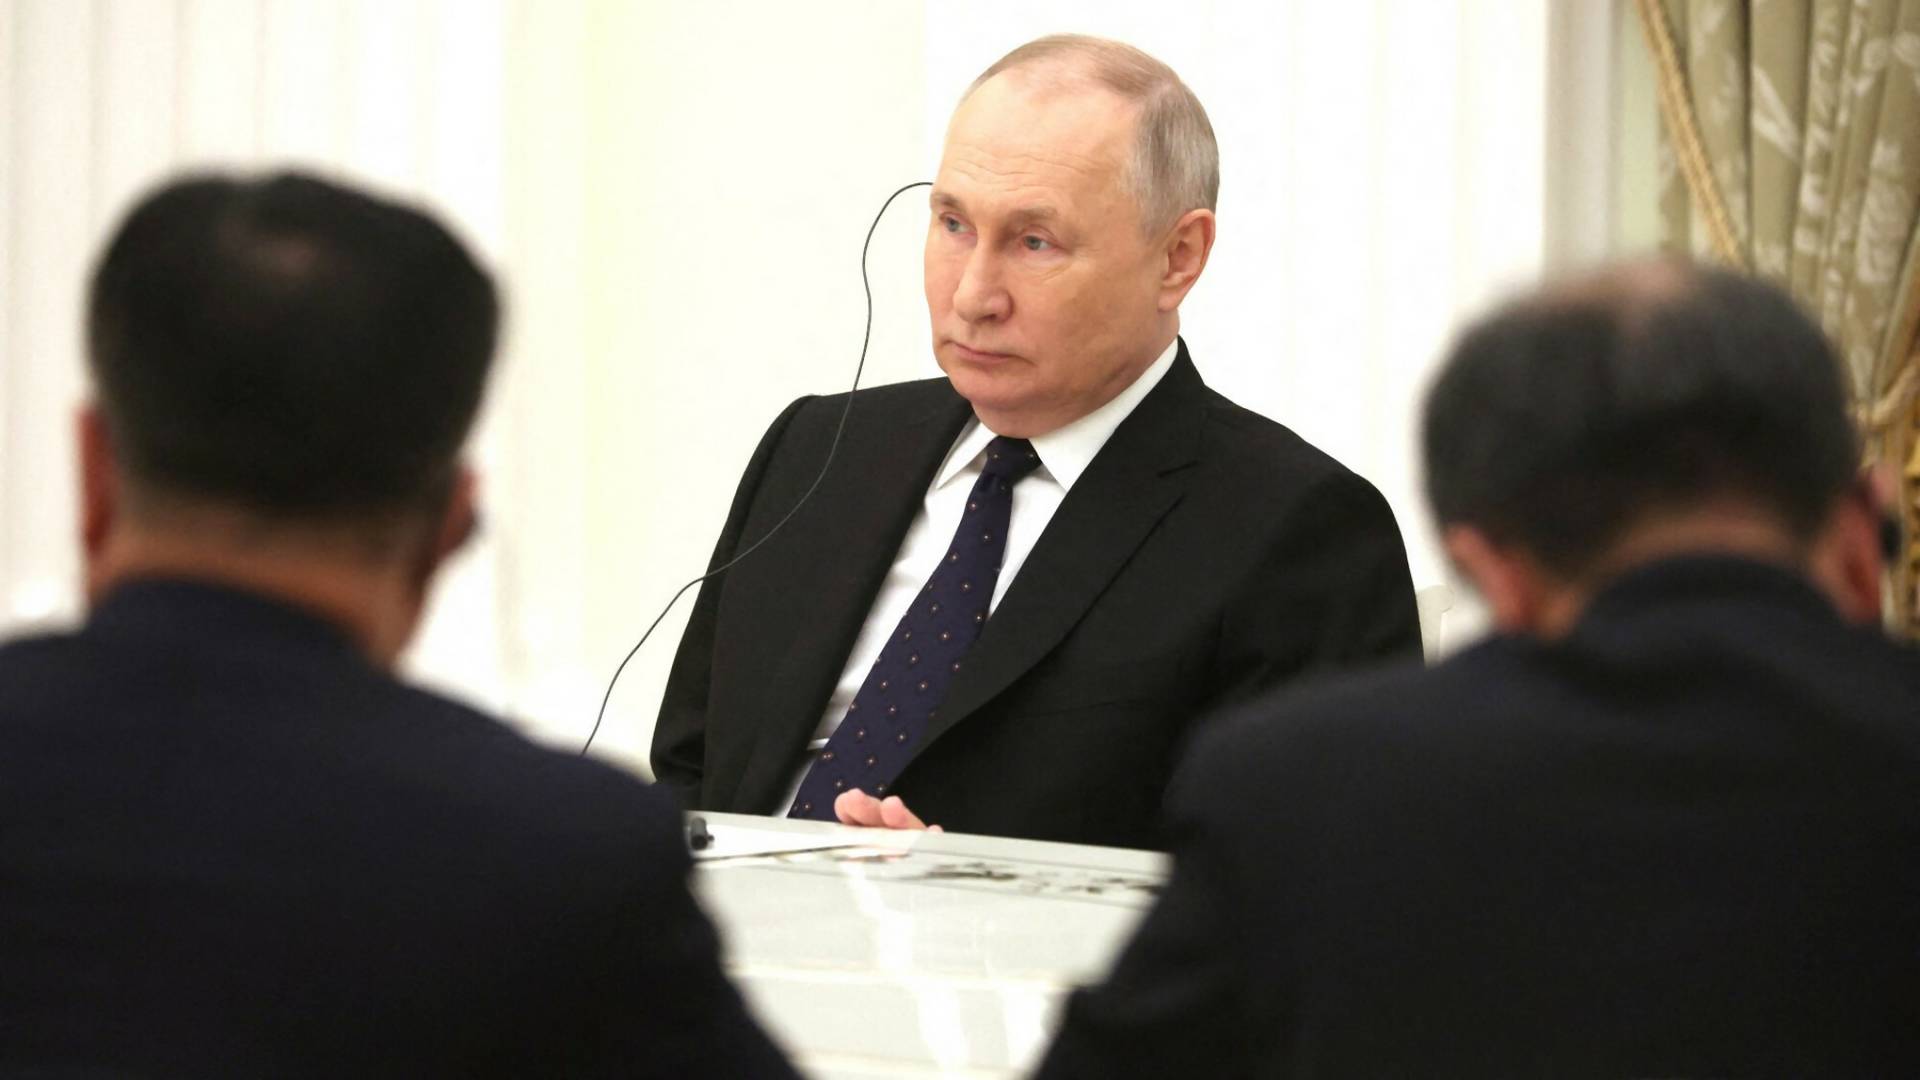 Międzynarodowy Trybunał Karny wydał nakaz aresztowania Putina za zbrodnie wojenne